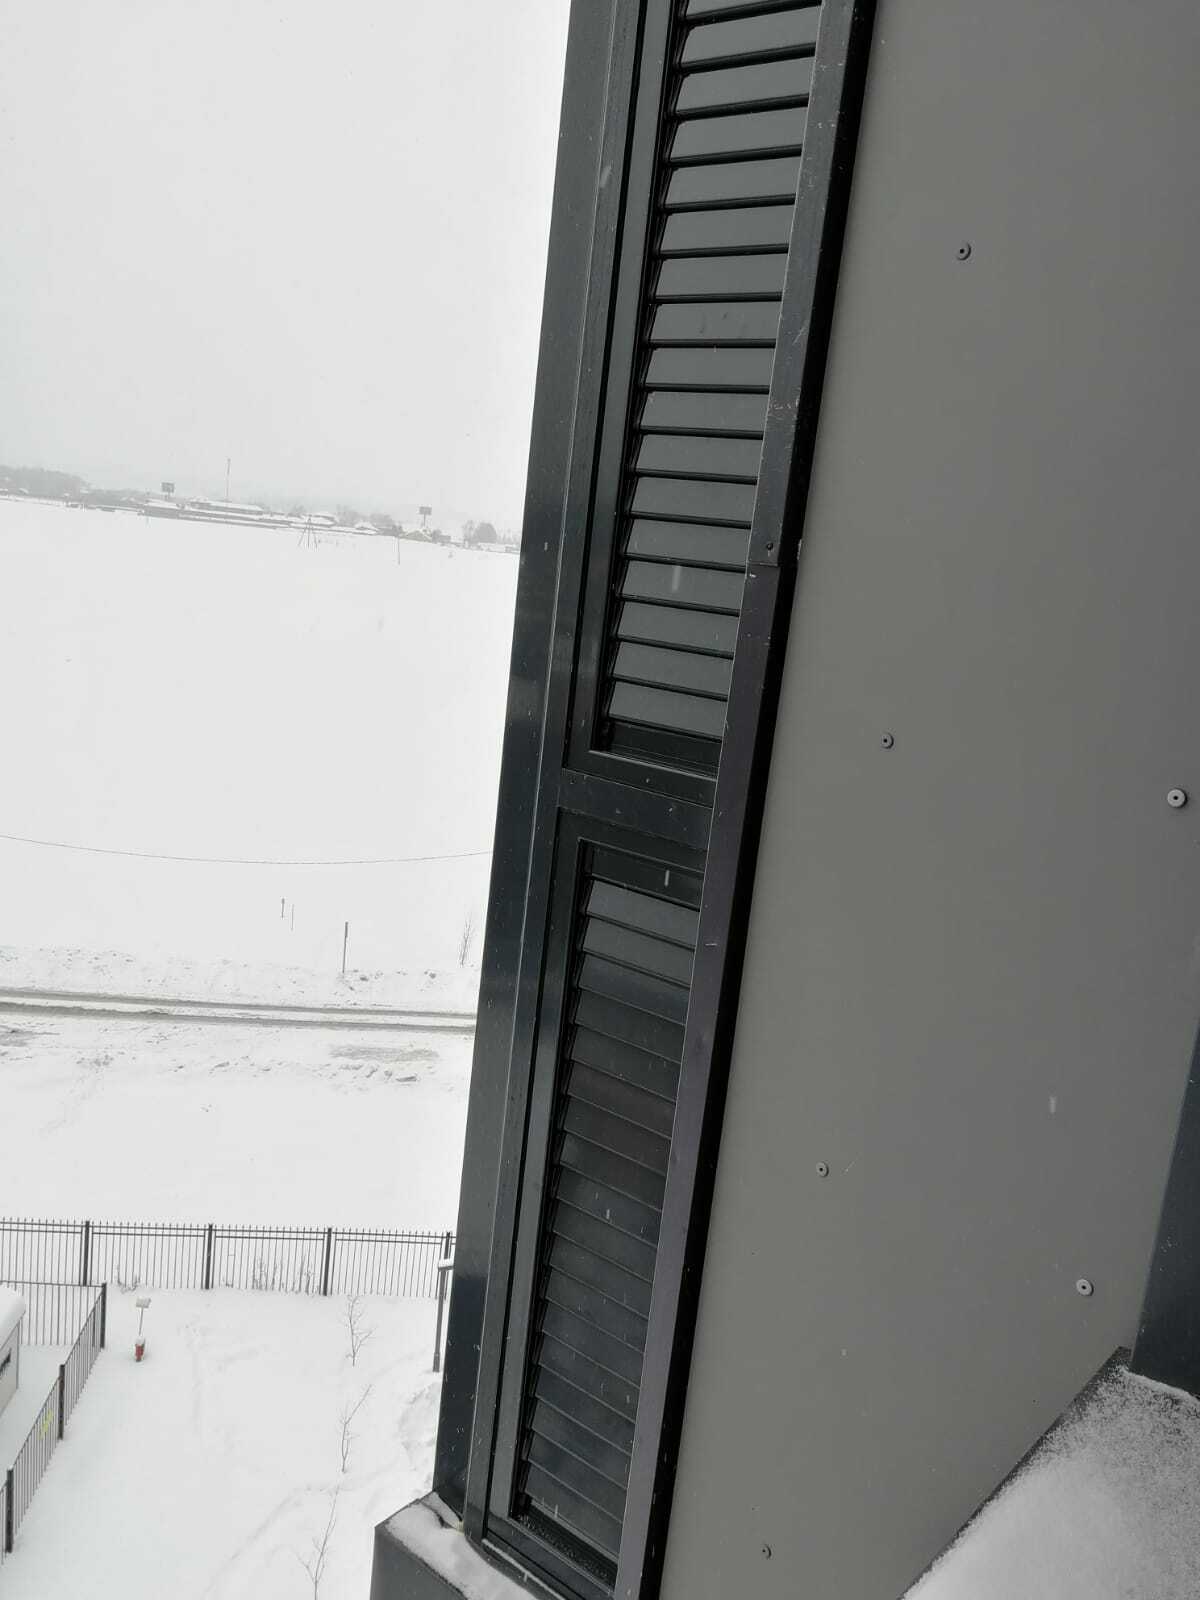 Если внешний блок кондиционера установлен на балконе, ему необходимо проветривание. Установка регулируемых вентиляционных решеток на балкон решит эту проблему. Ручной привод. Герметичное закрытие. Установка вместо любого стеклопакета.